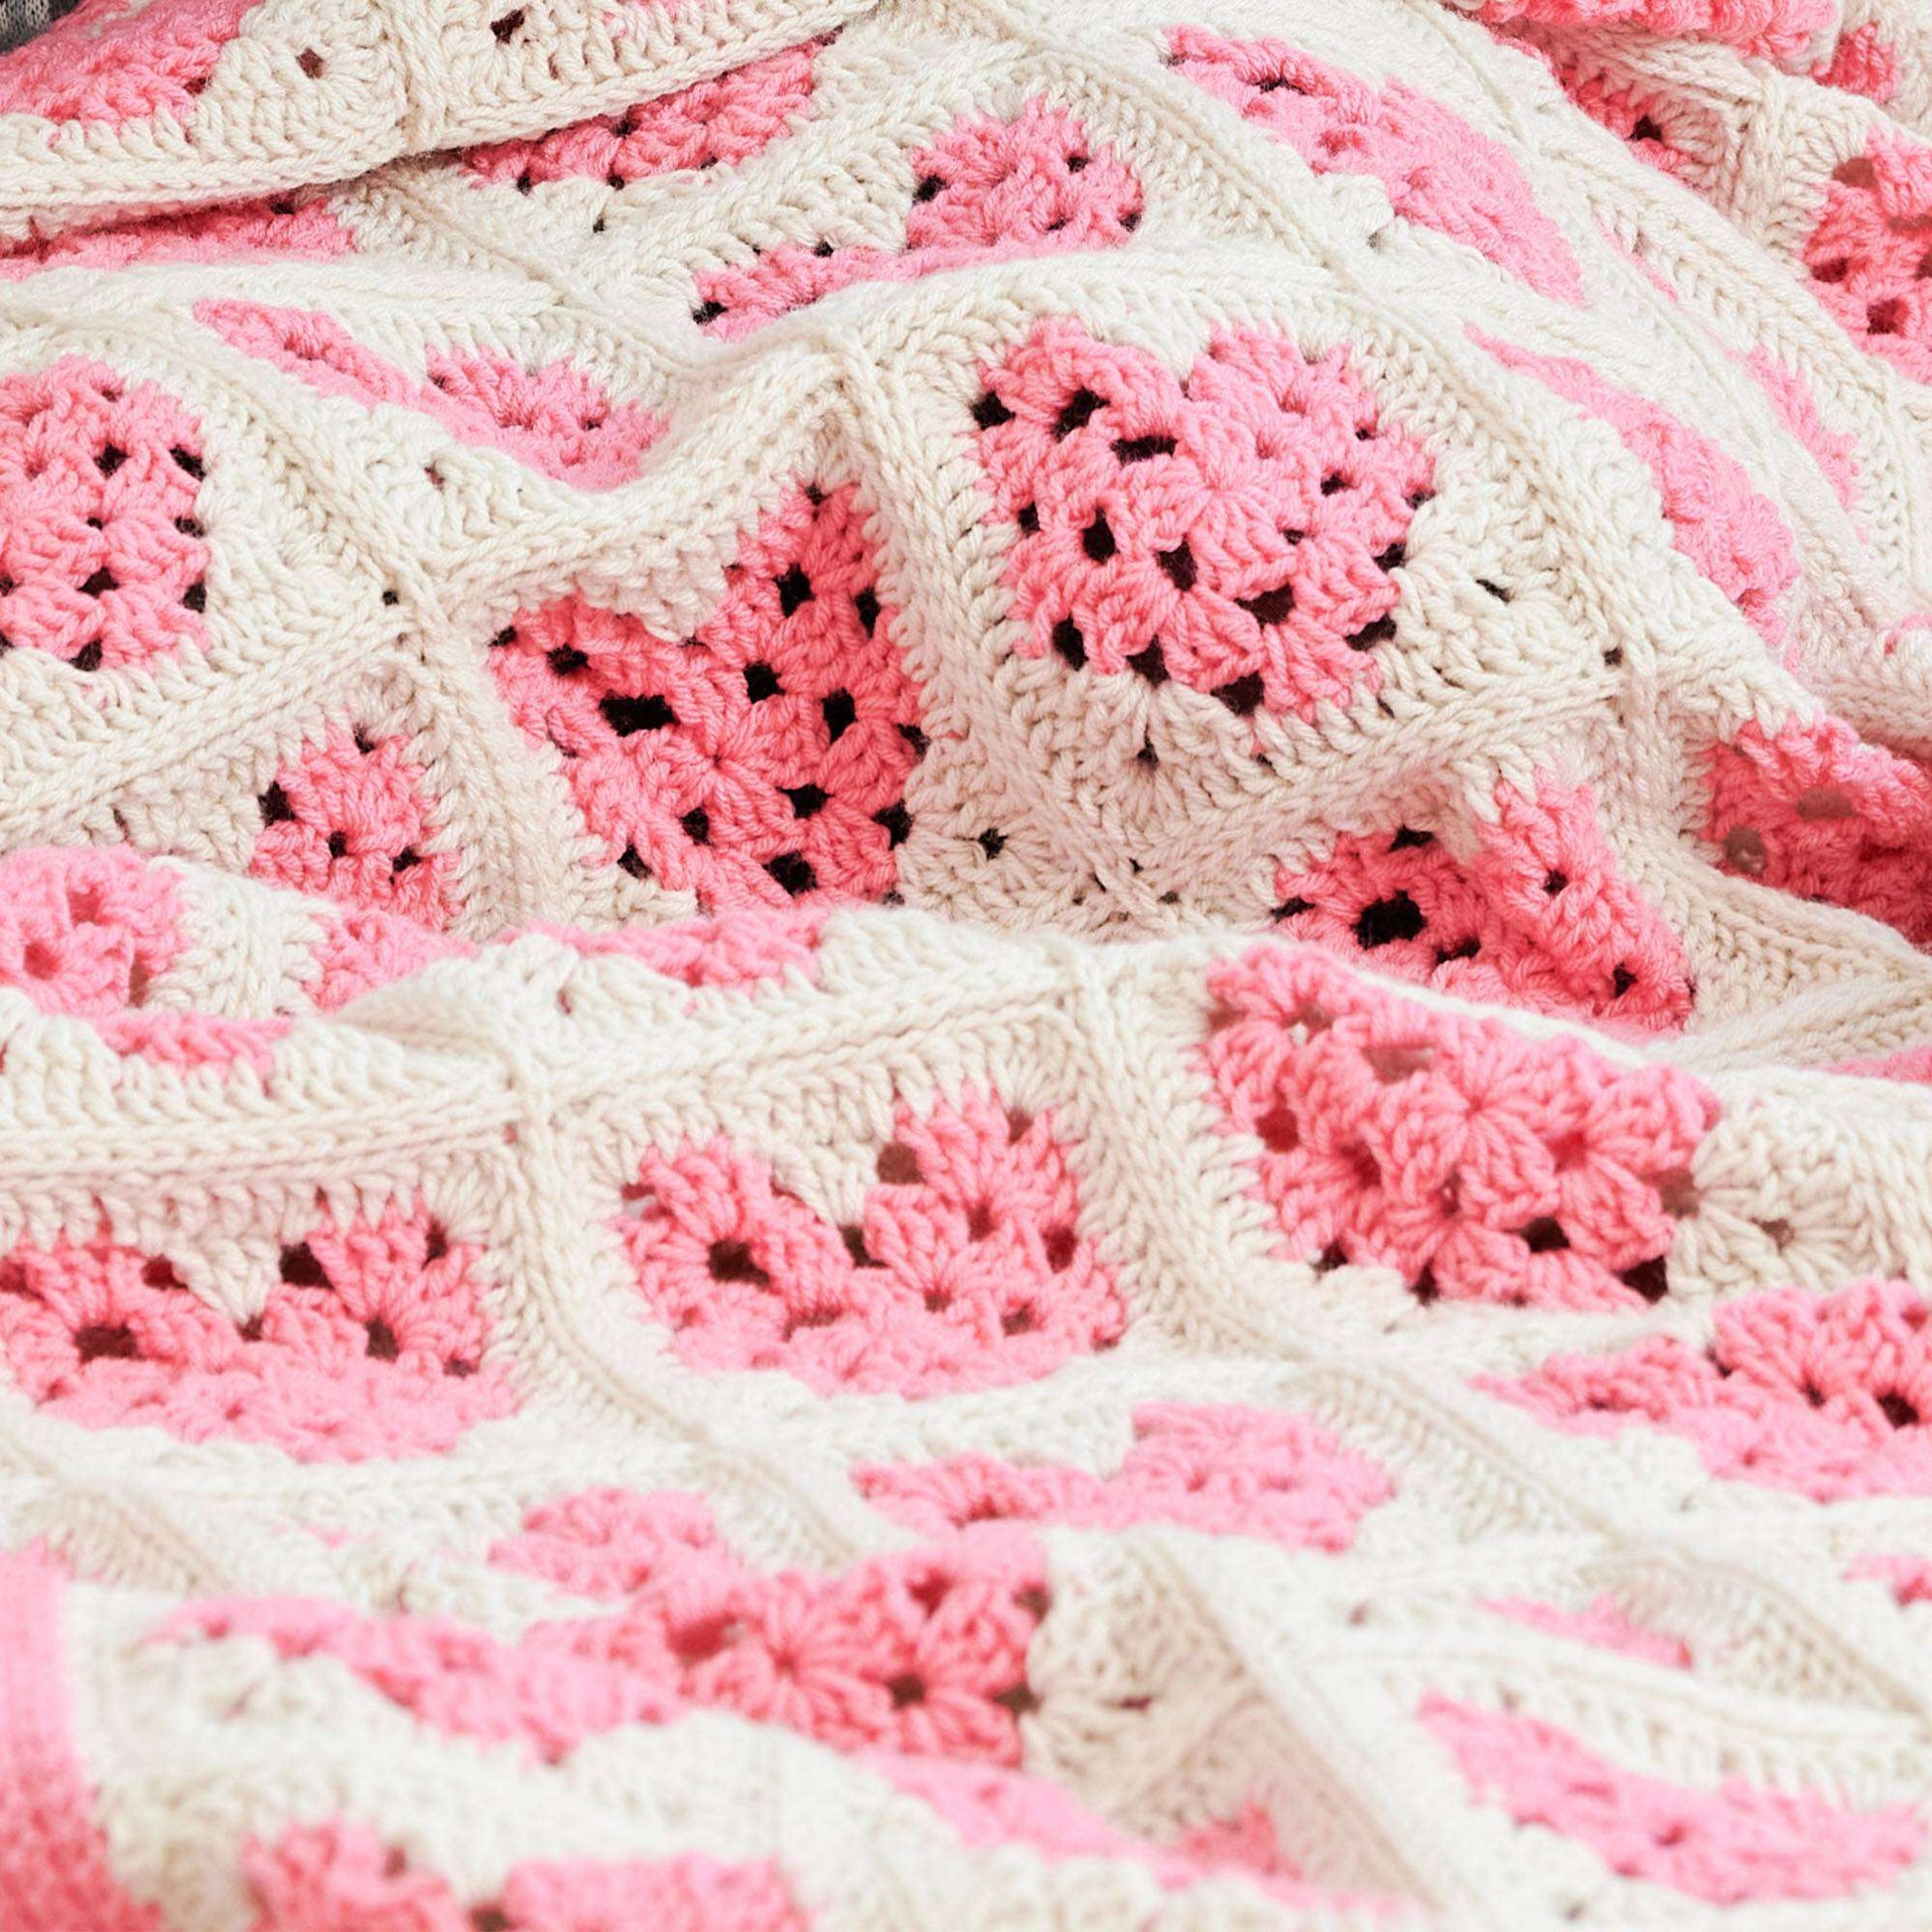 Free Red Heart Piece Of My Heart Crochet Scrapghan Blanket Pattern